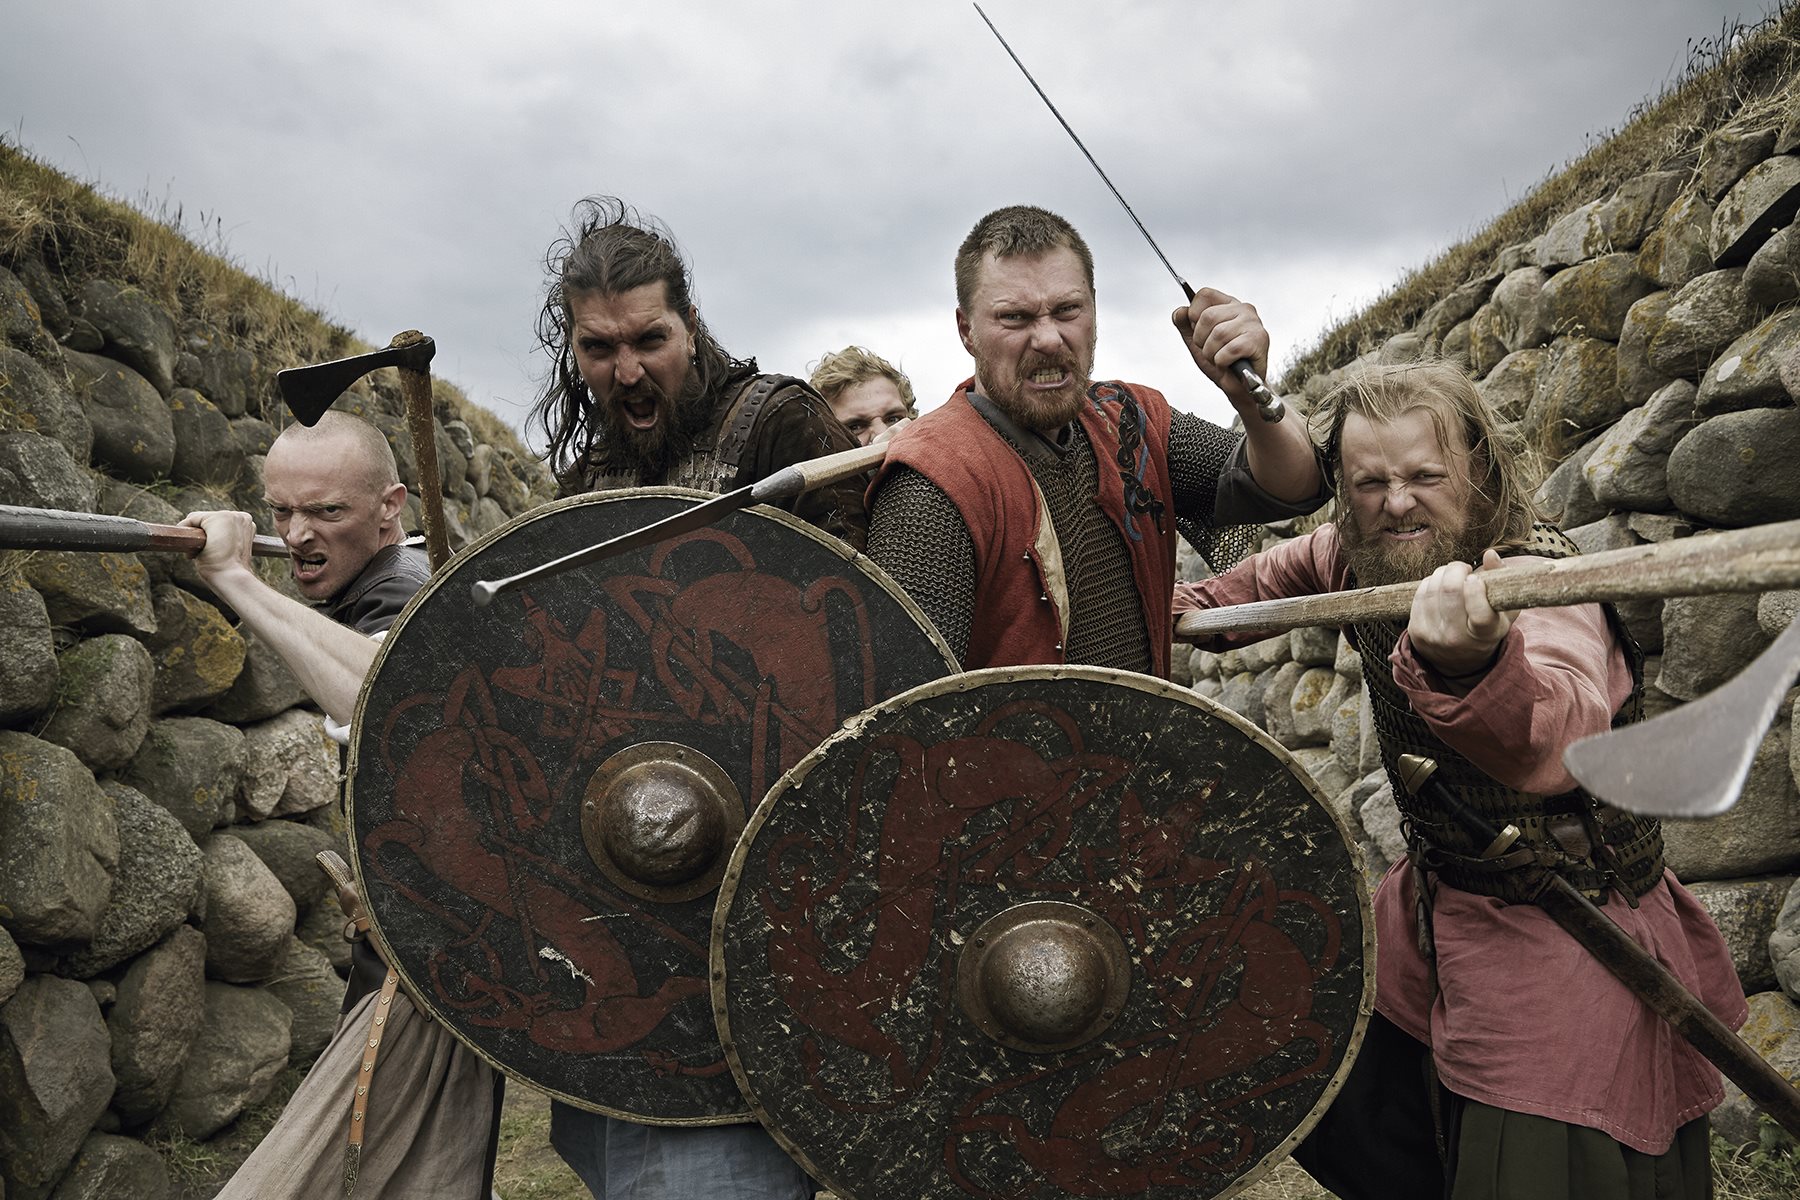 Una planta alucinógena fue la causante la ira en los guerreros vikingos